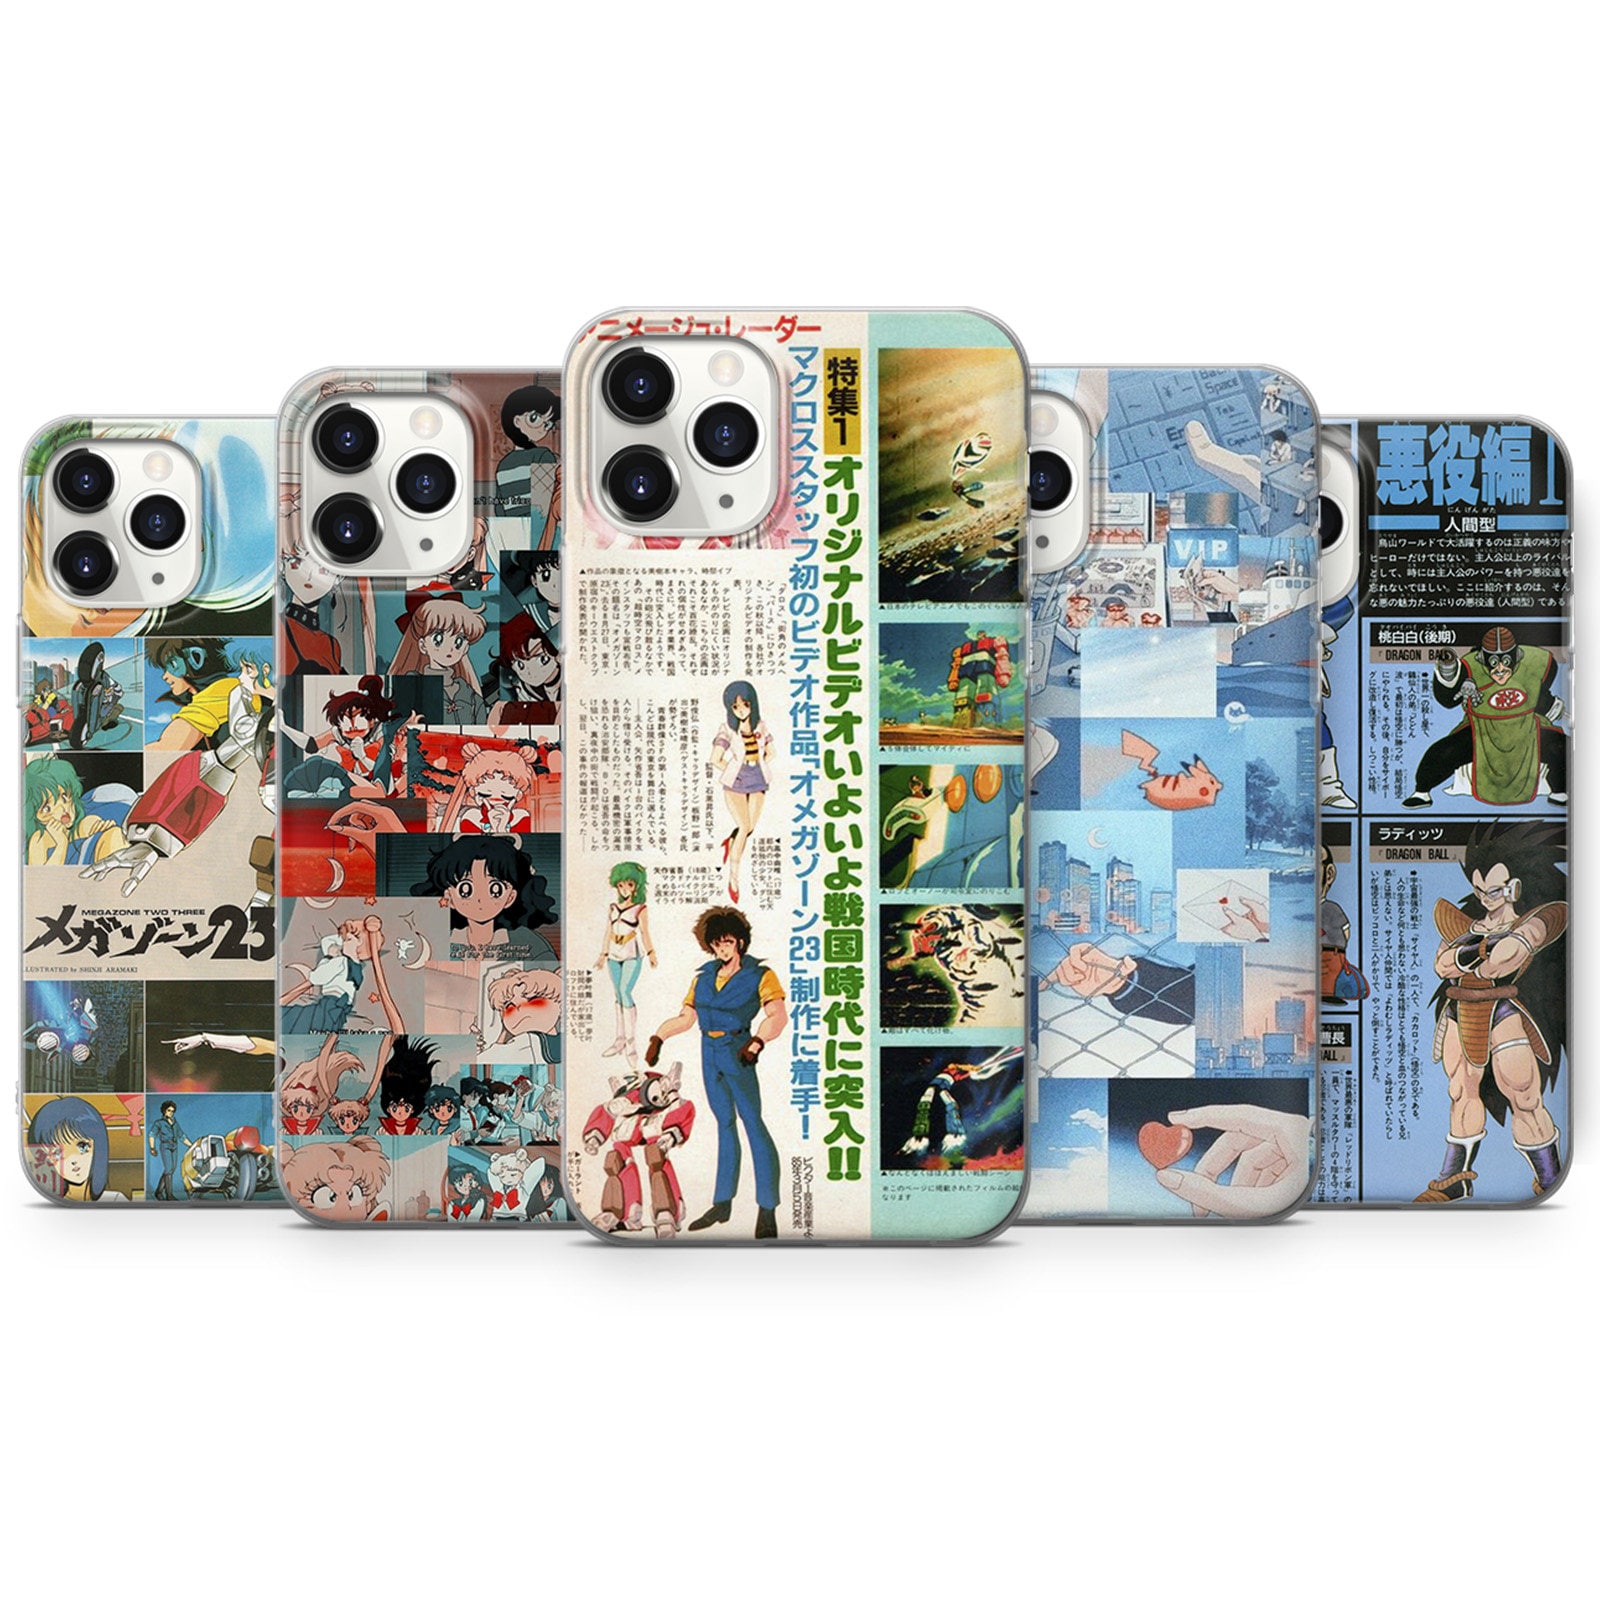 Vinsmoke Back Cover for Iphone 11 Gojo Jujustu Kaisen Anime Gojo Cover   Vinsmoke  Flipkartcom